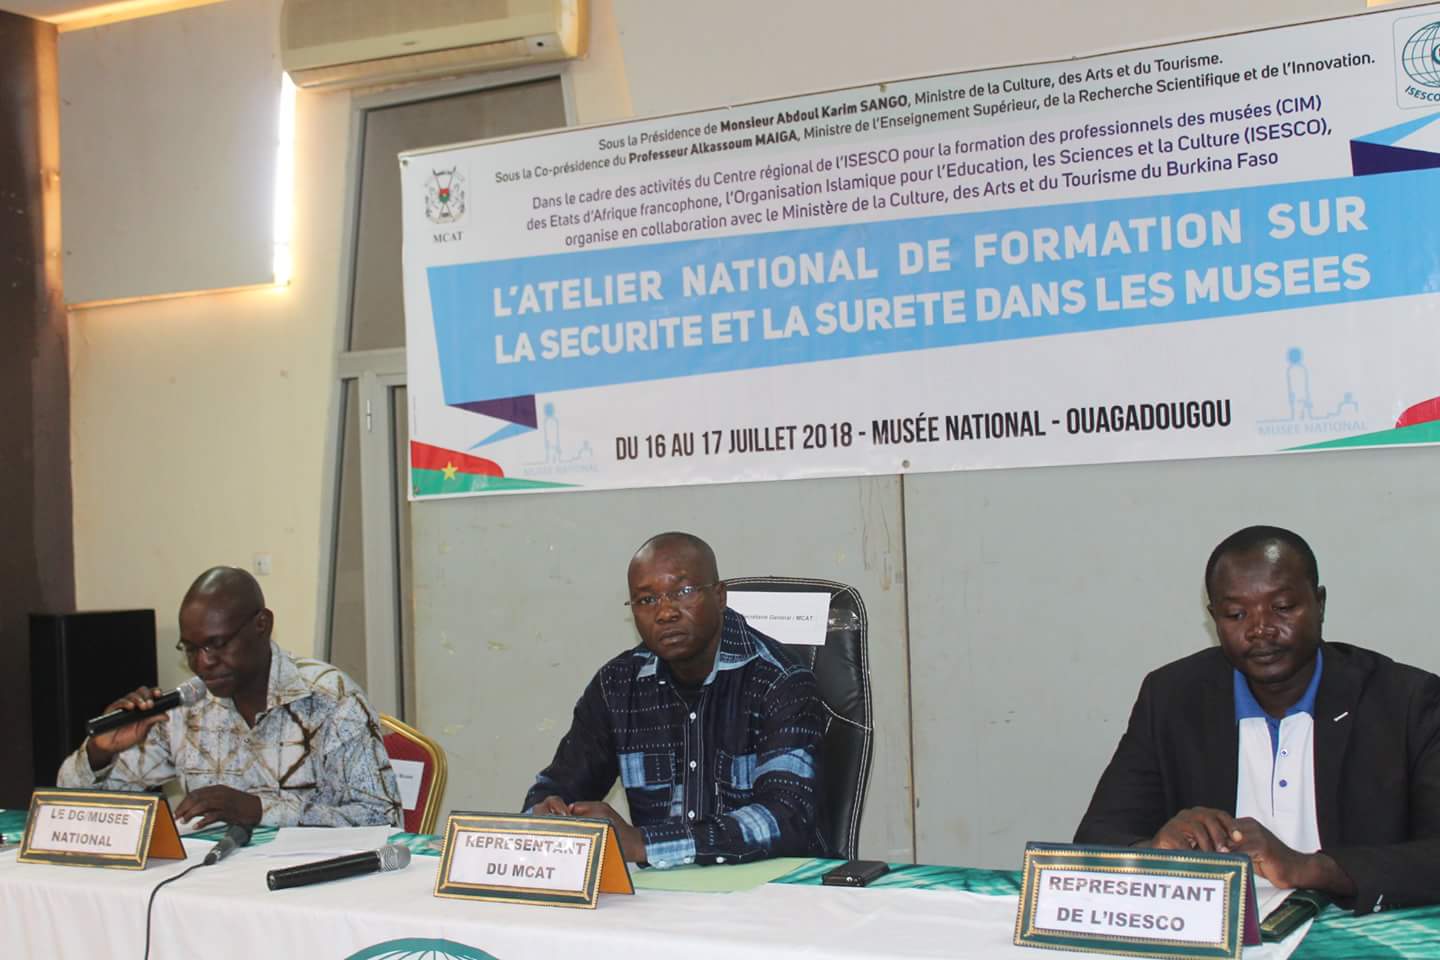  Sécurité et sureté dans les musées: Des acteurs en formation à Ouagadougou